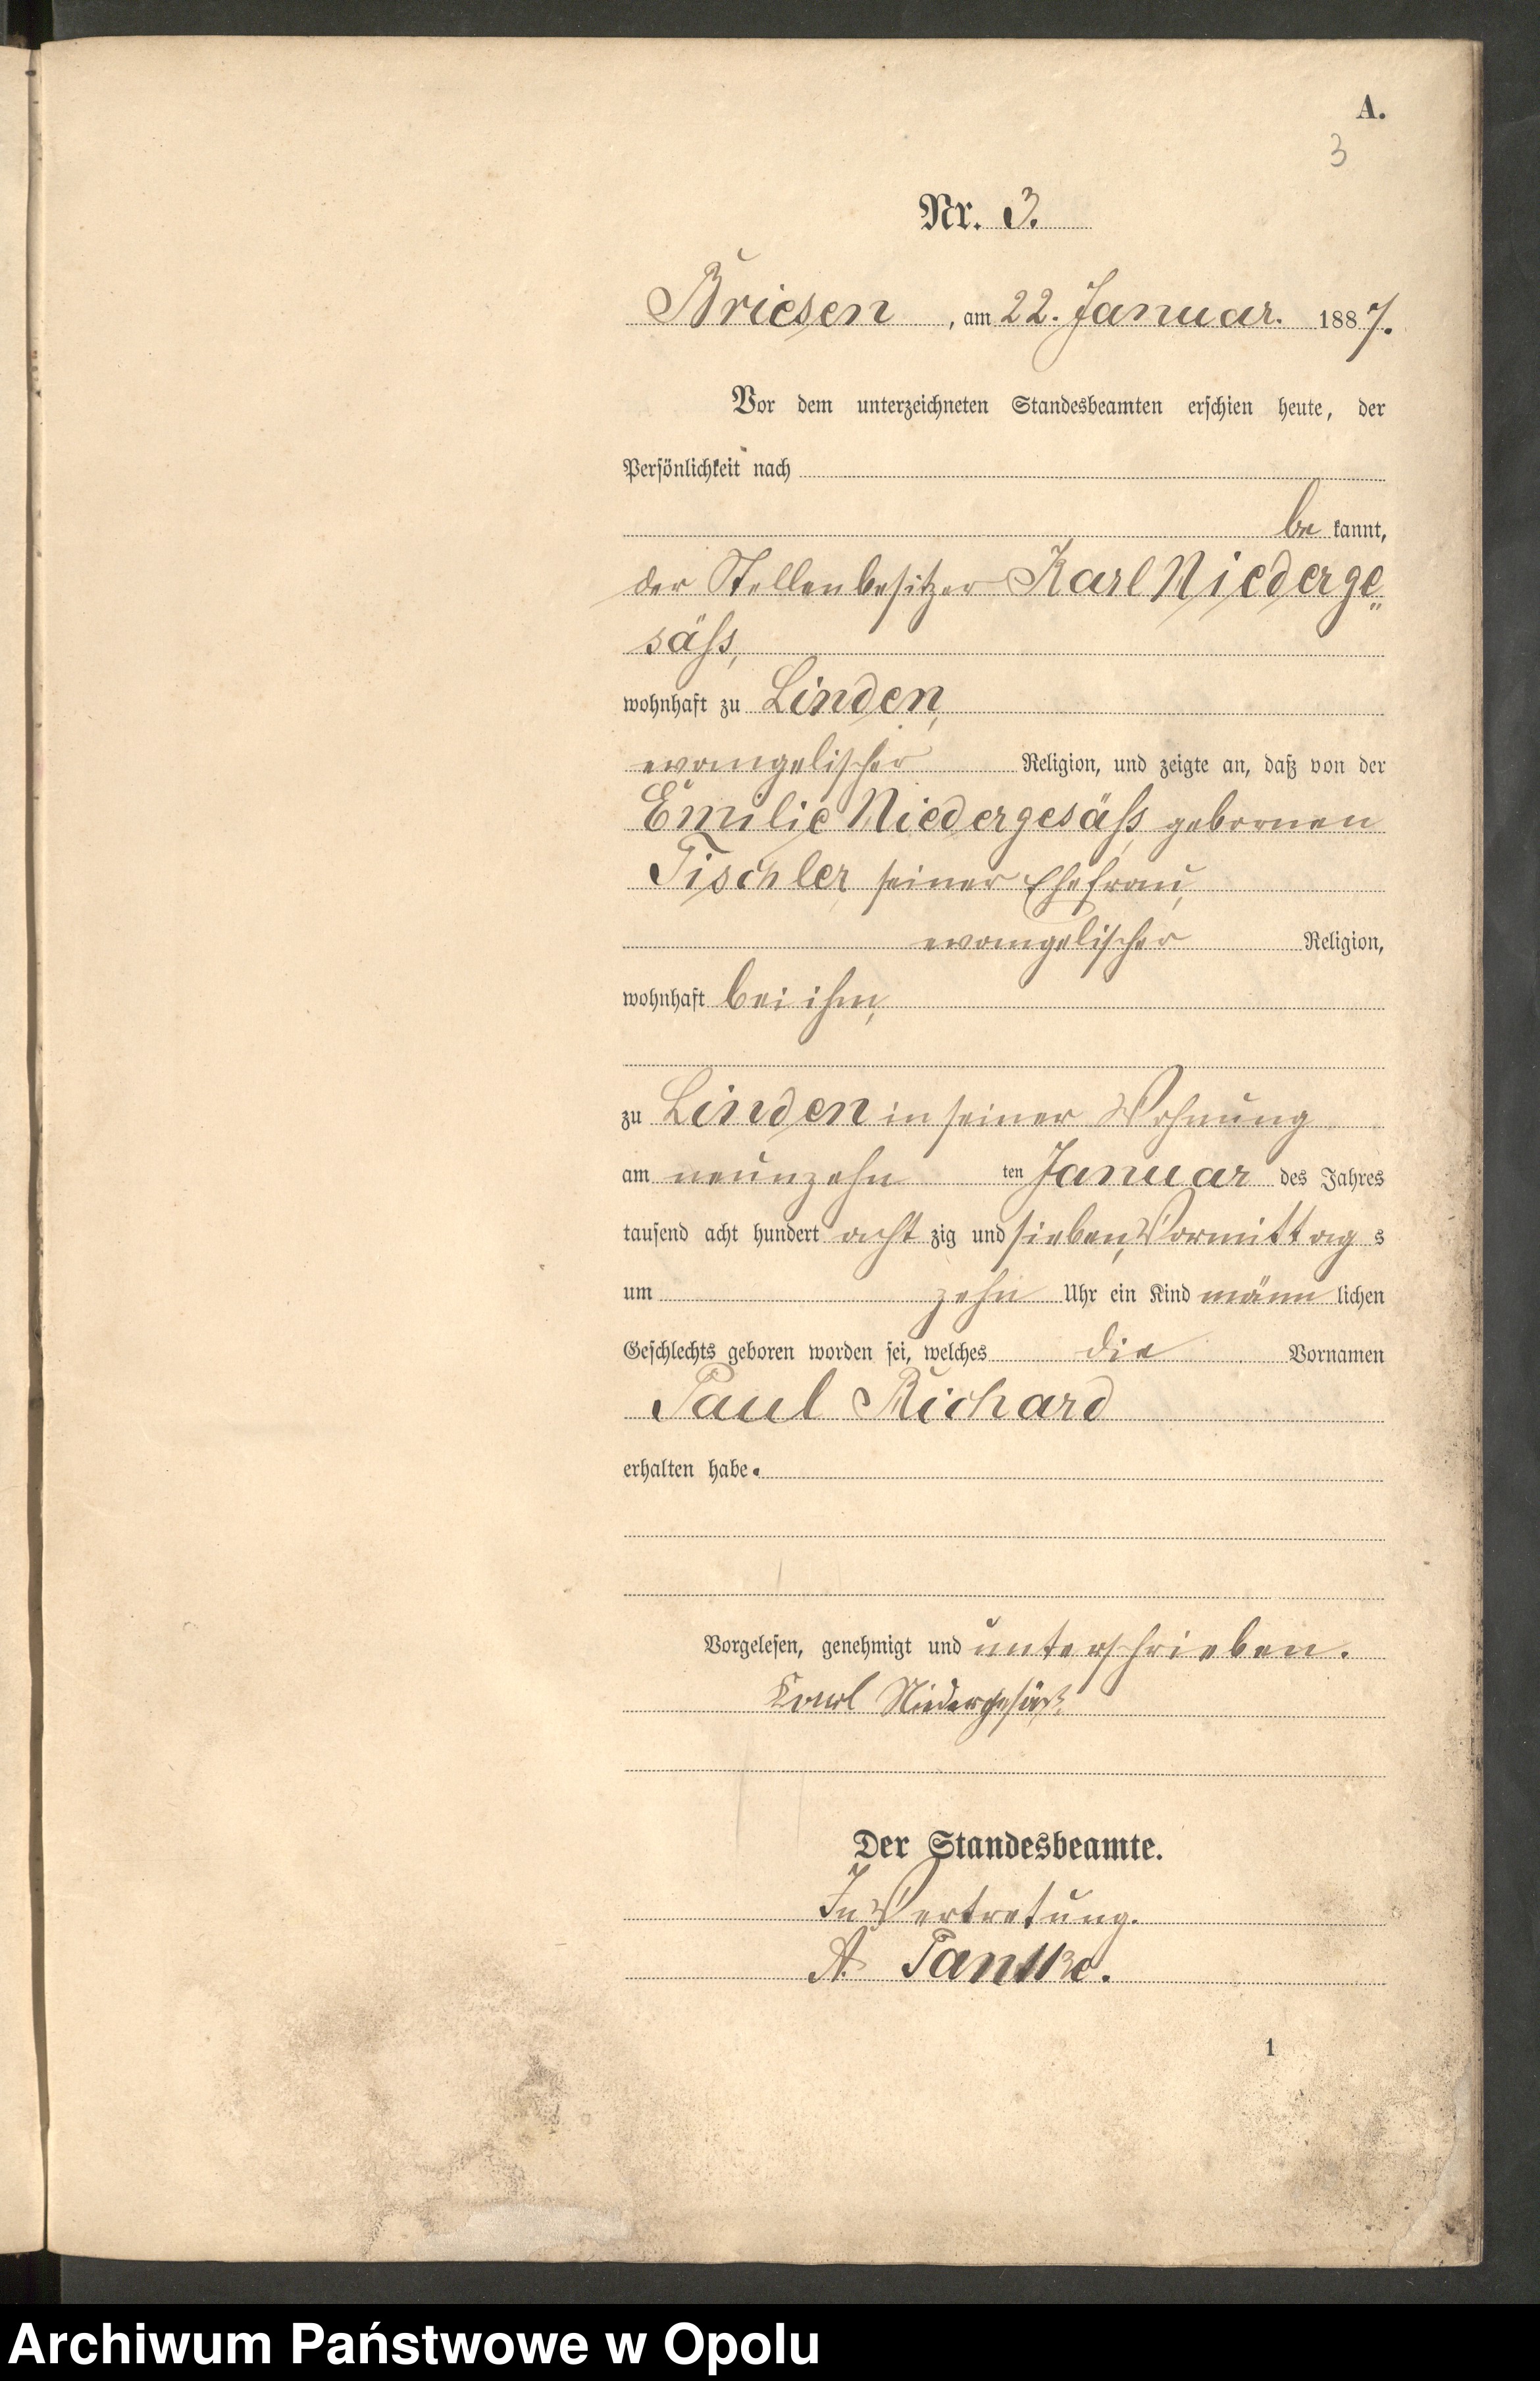 Skan z jednostki: Geburts-Haupt-Register Standes-Amt Rothh.[aus] Briesen 1887